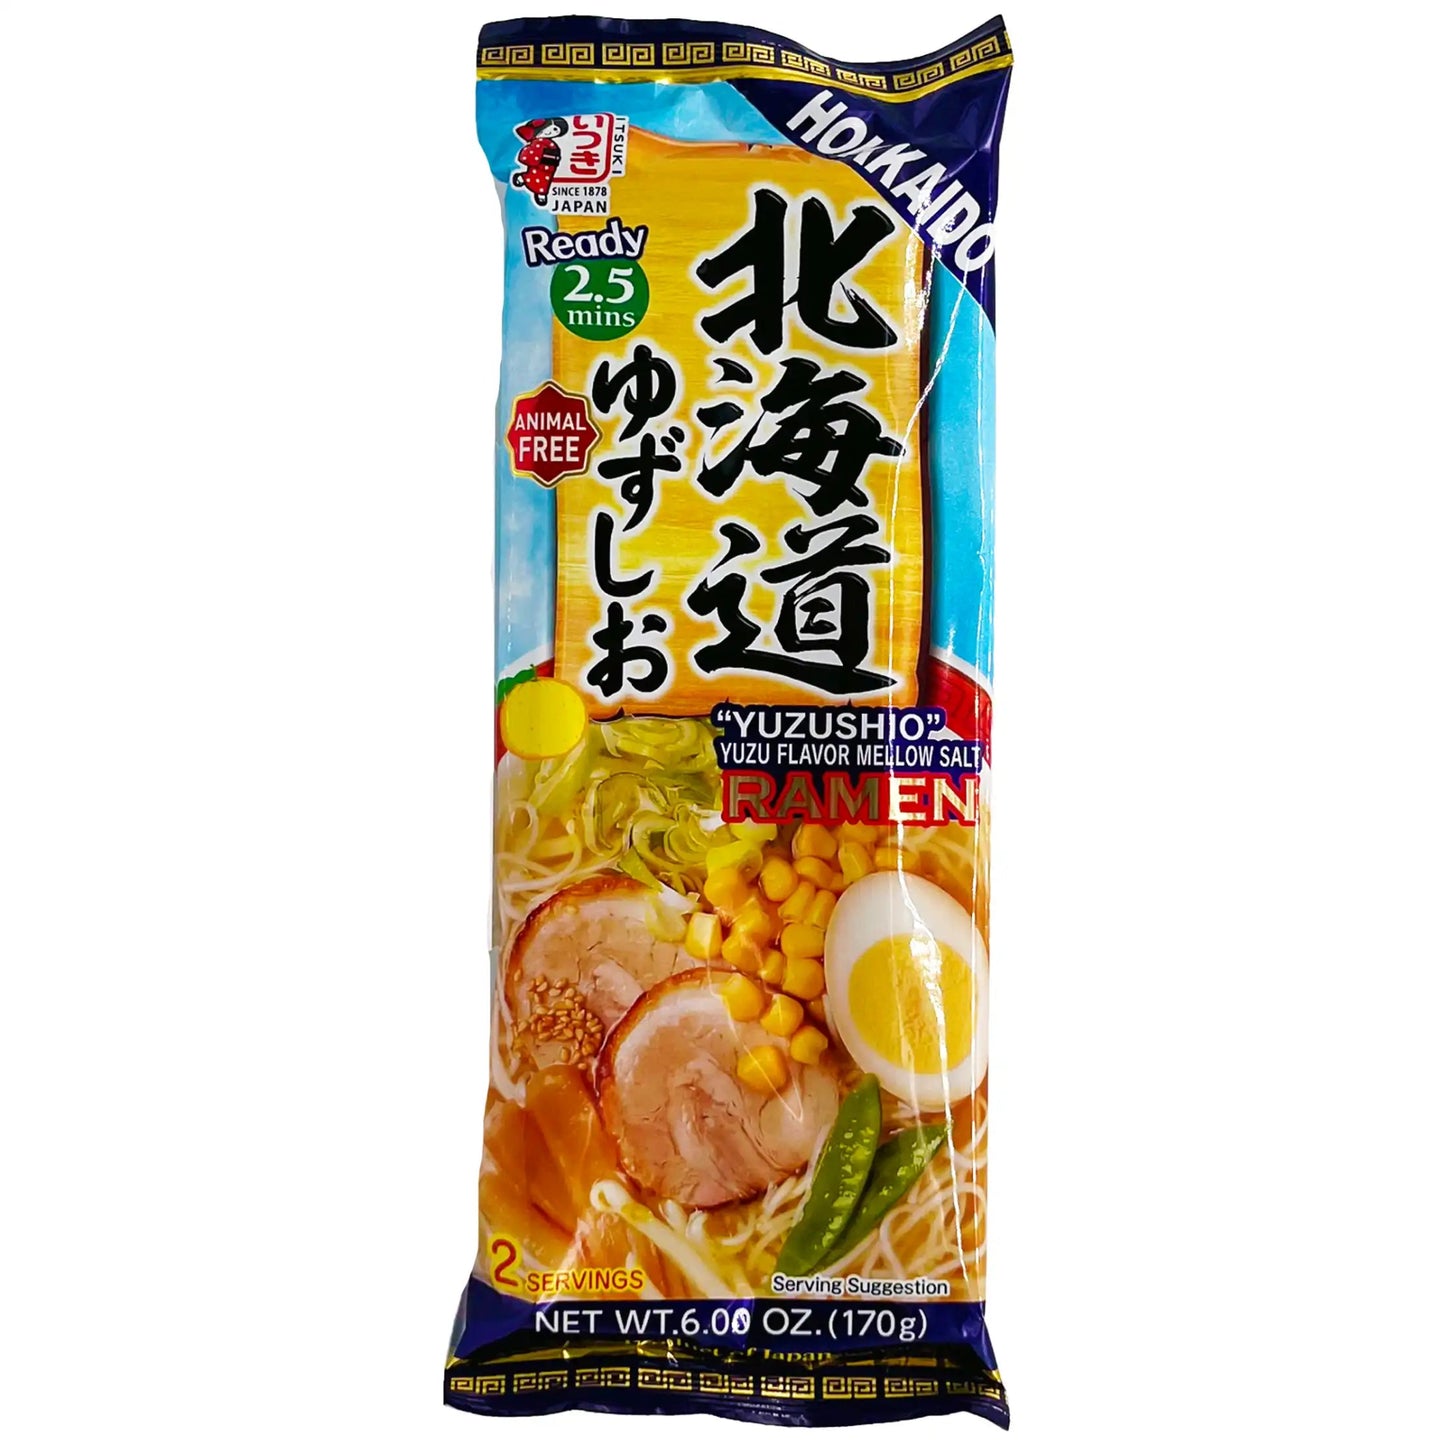 Itsuki Hokkaido Yuzu Shio Ramen 2 Servings 6 oz - Tokyo Central - Noodles - Itsuki -